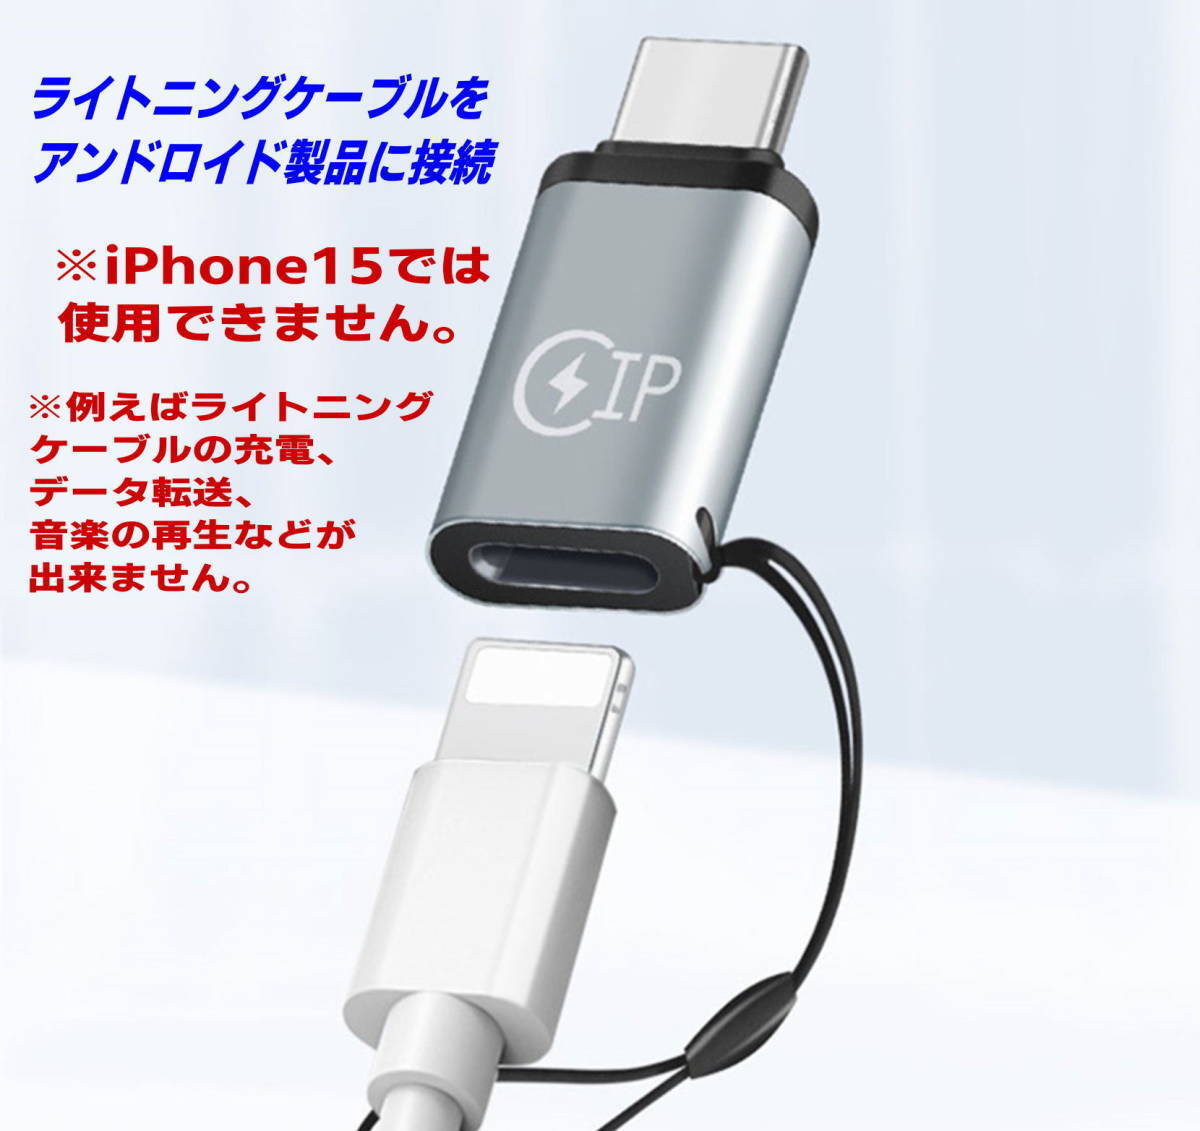 【2個セット】USB変換アダプタ TypeC(メス)-ライトニング(オス)、USB TypeC(メス)-ライトニング(オス) iPhone スマホ充電 OTG機能_画像3